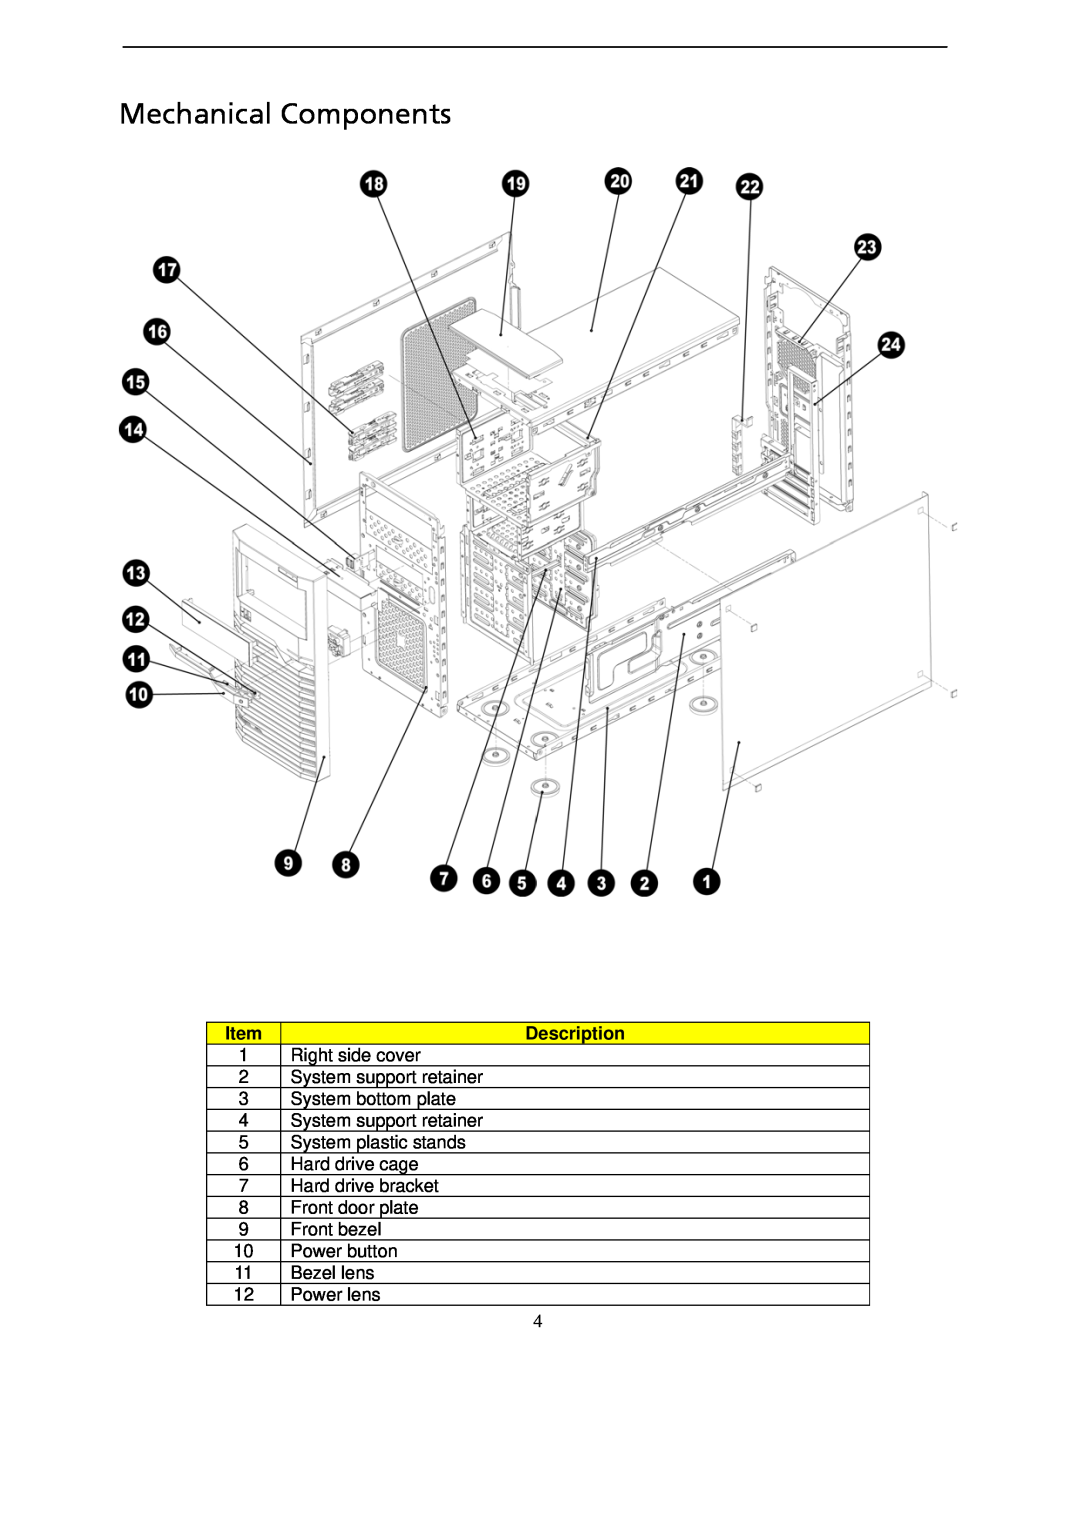 Gateway GT115 manual Mechanical Components, Description 